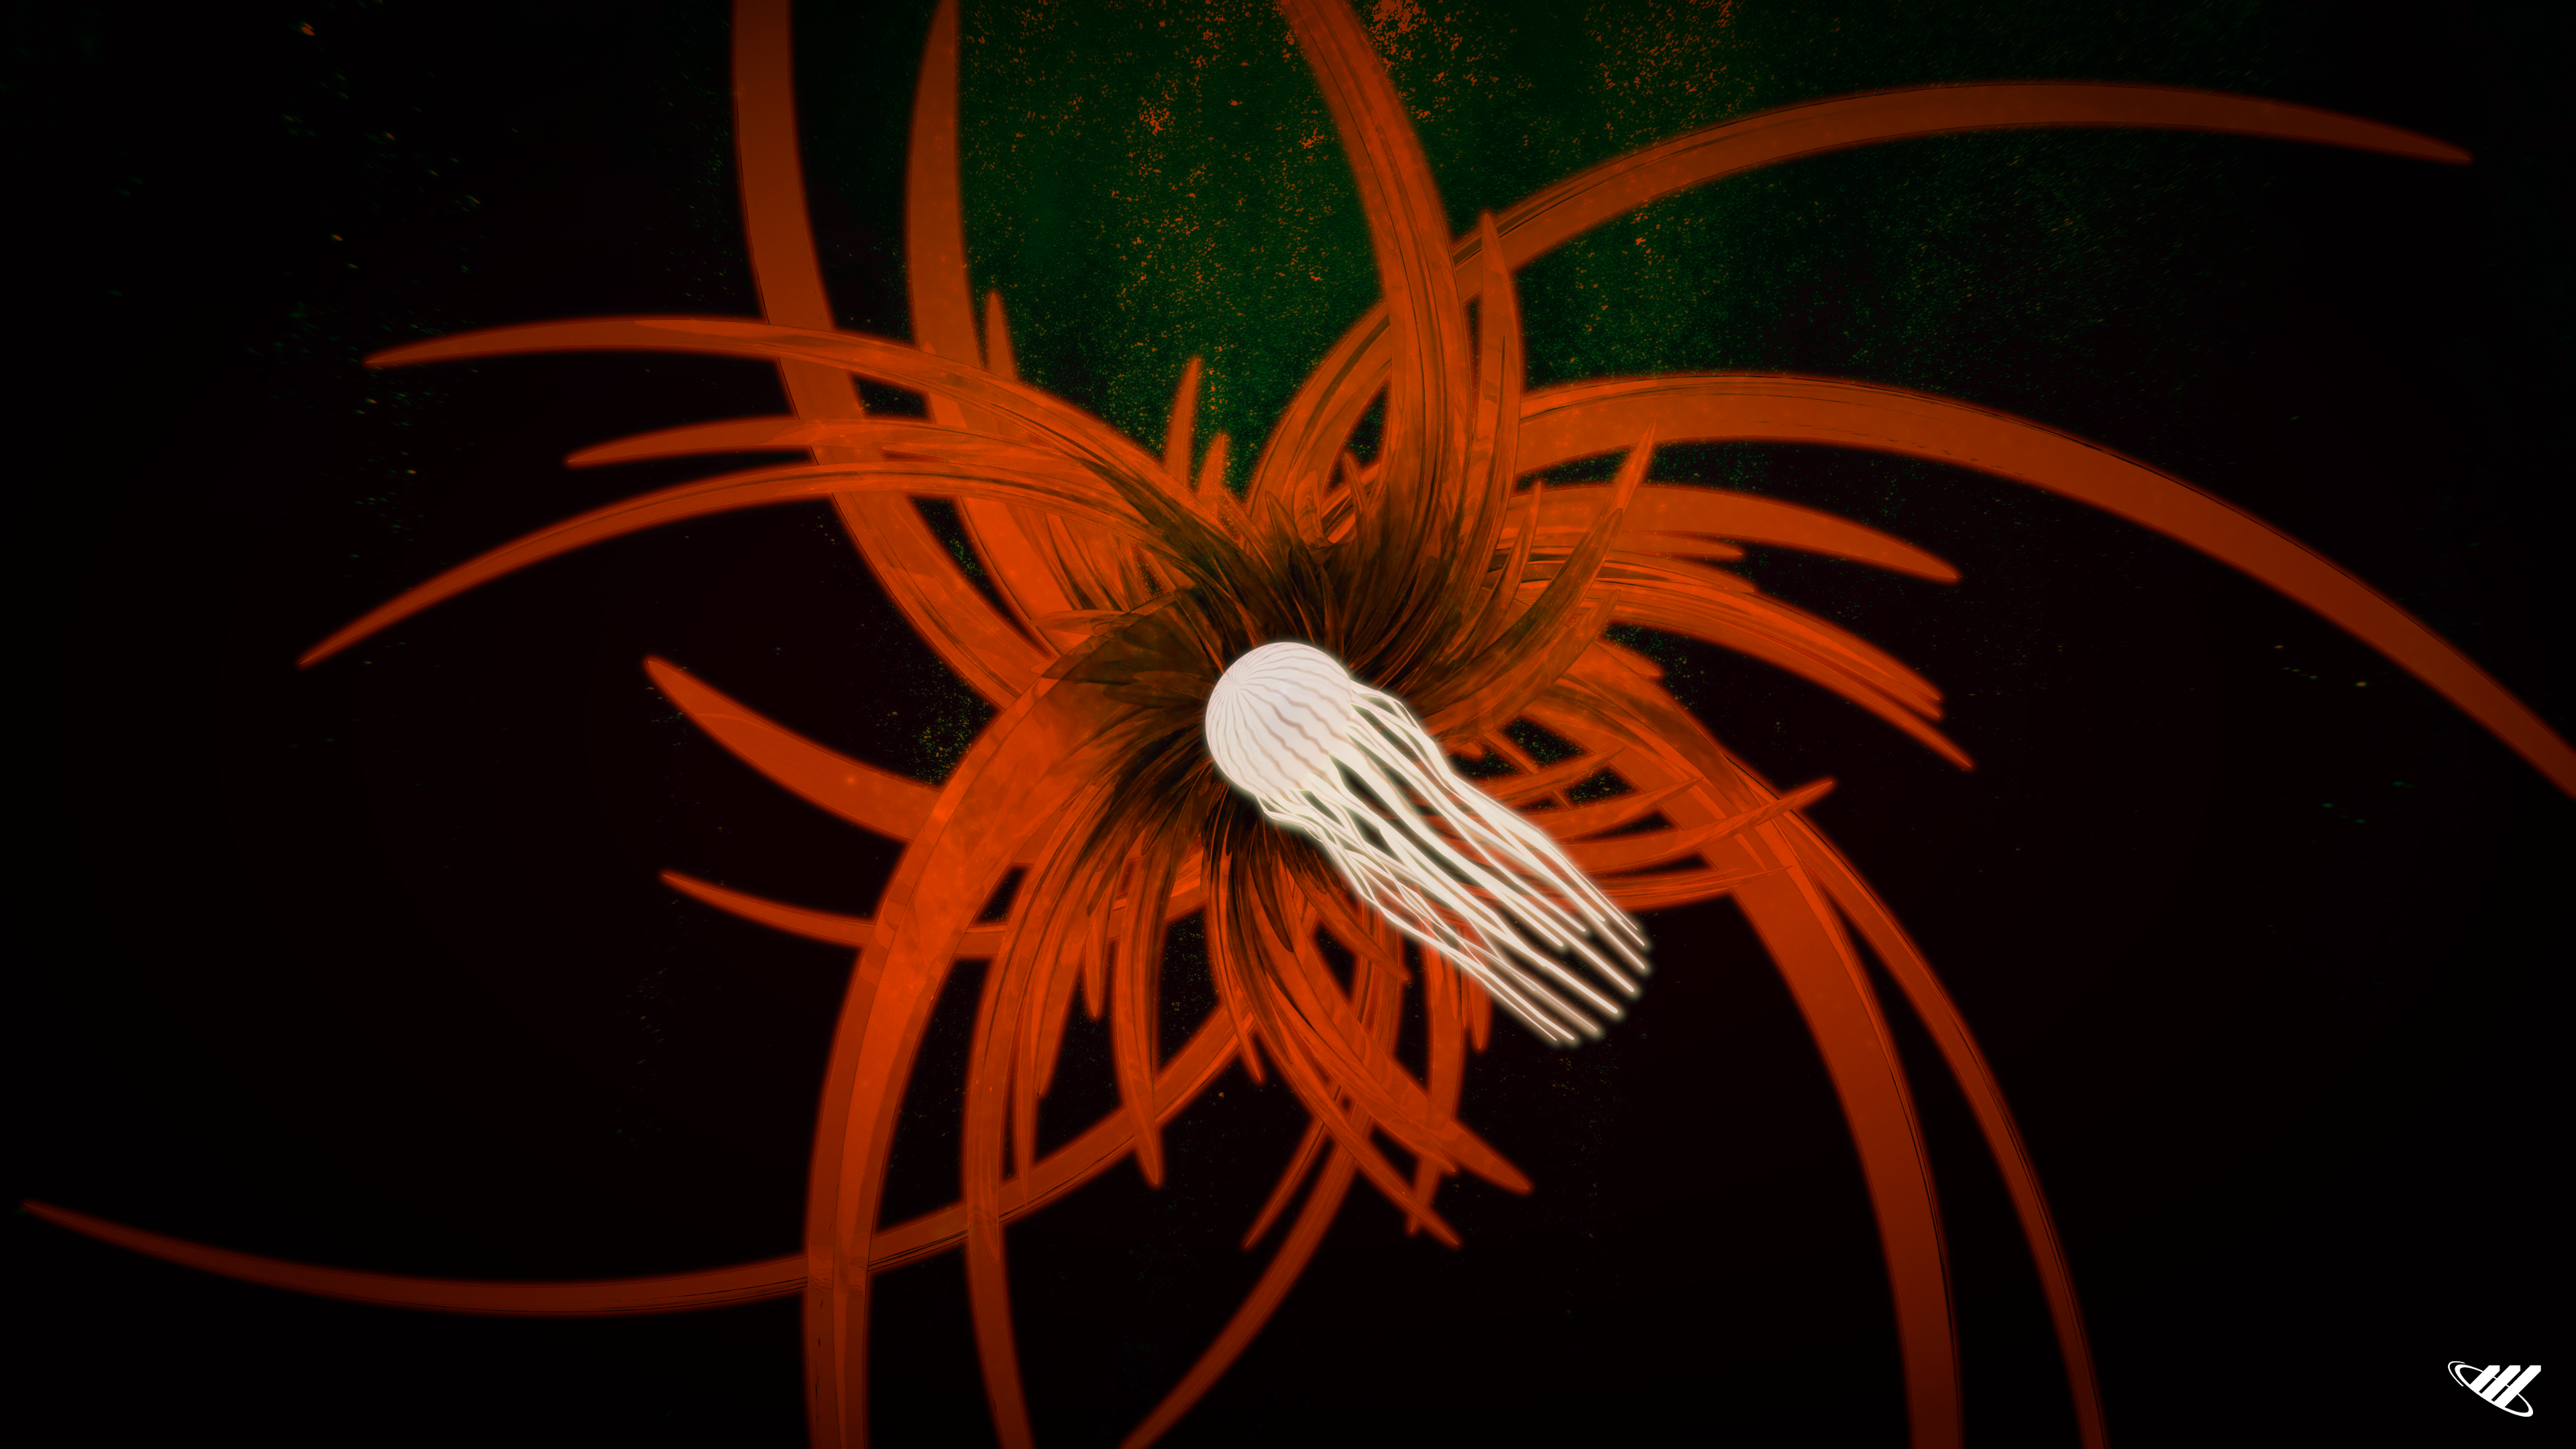 Jellyfish under water in front of orange spirals.